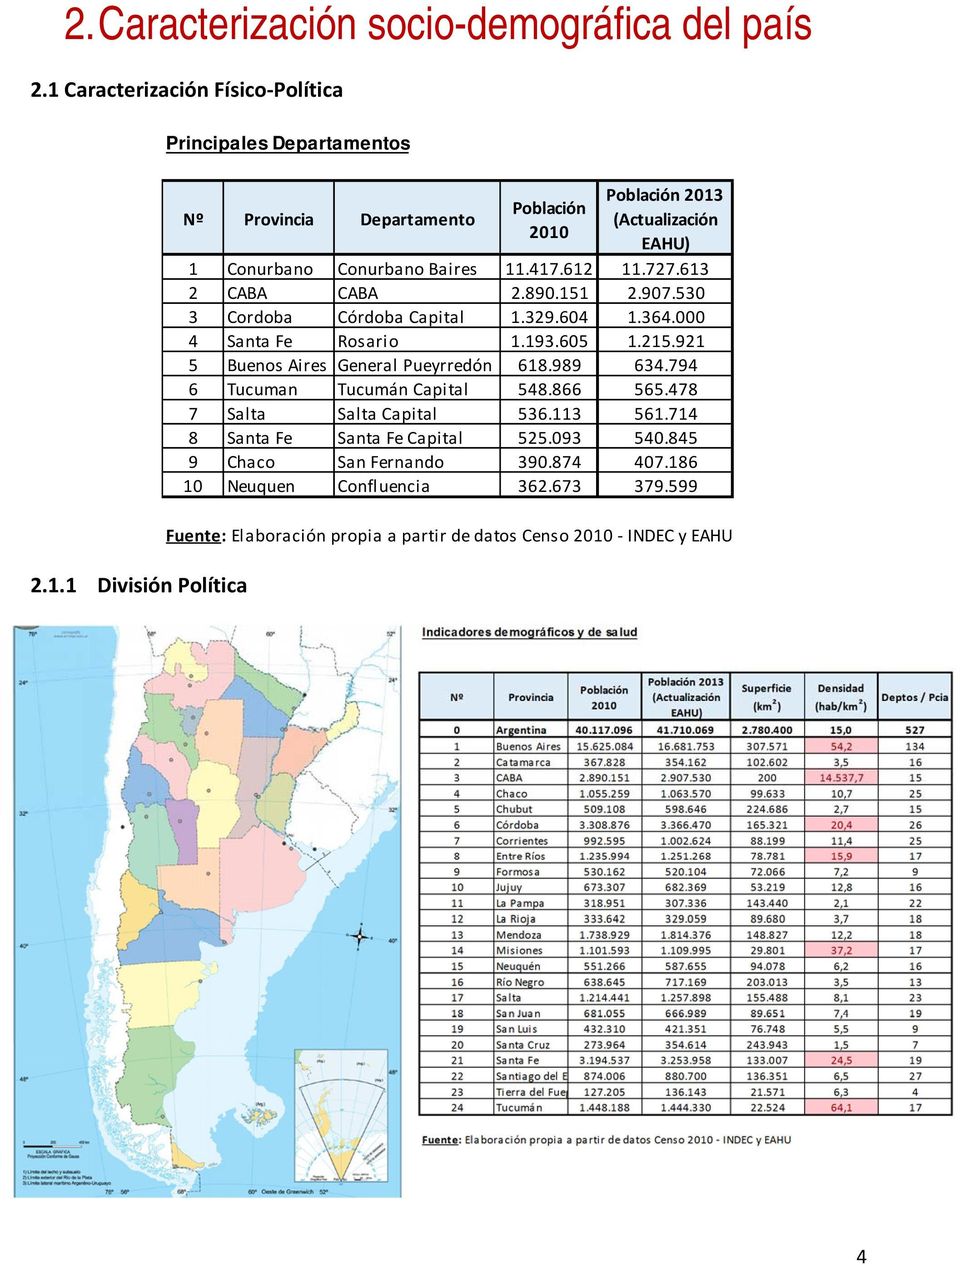 1 División Política Principales Departamentos Nº Provincia Departamento Población 2010 Población 2013 (Actualización EAHU) 1 Conurbano Conurbano Baires 11.417.612 11.727.